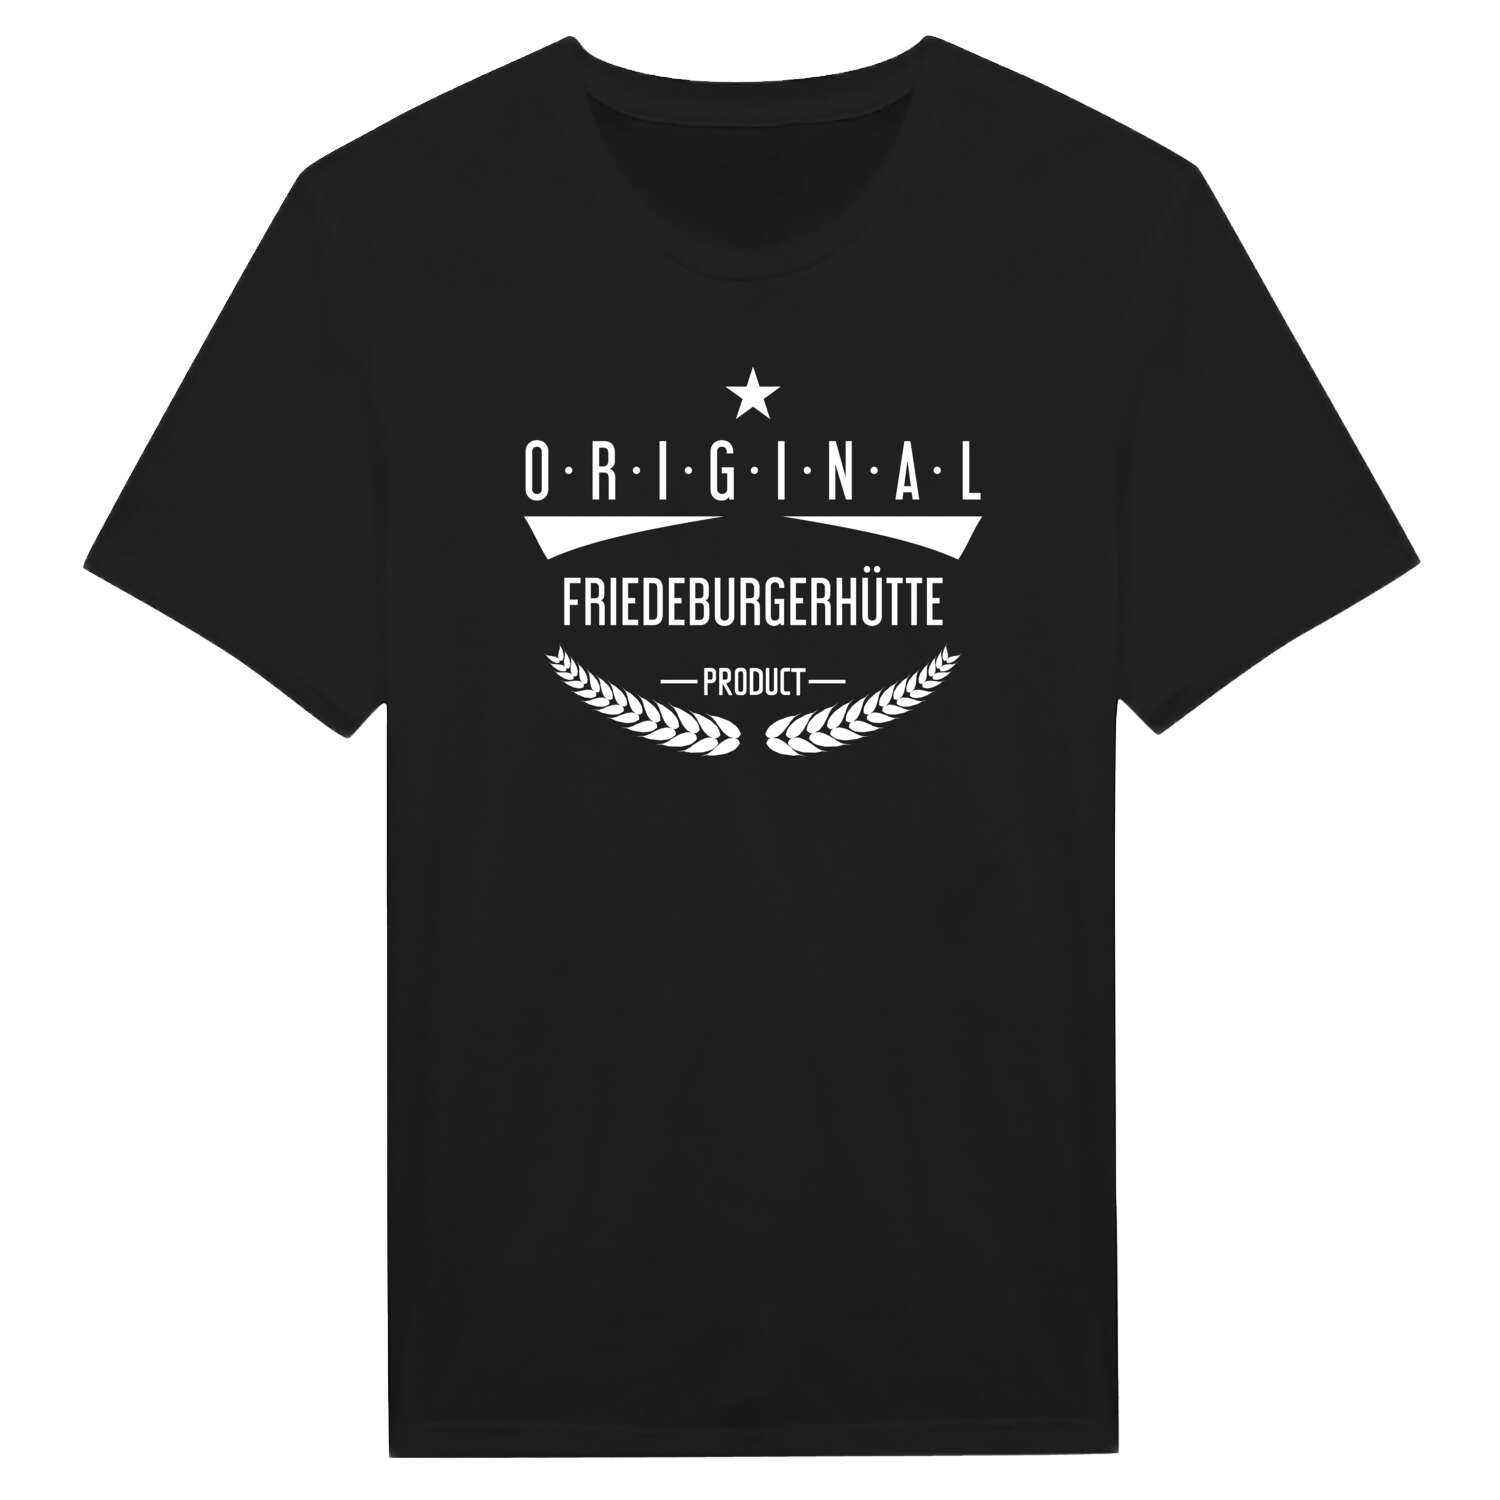 Friedeburgerhütte T-Shirt »Original Product«